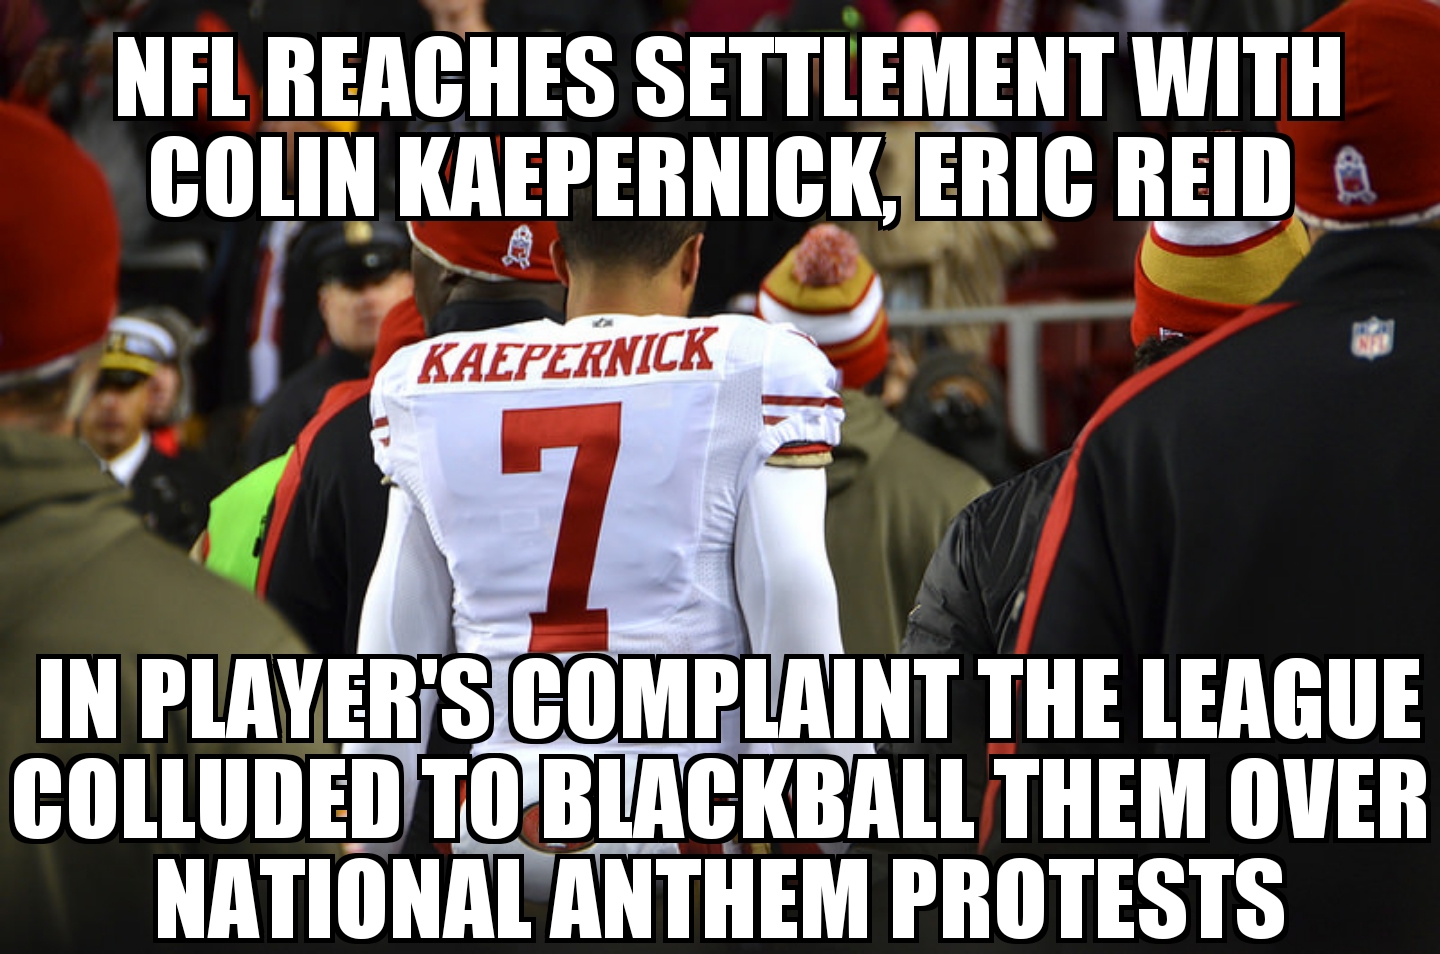 NFL reaches settlement with Kaepernick, Reid